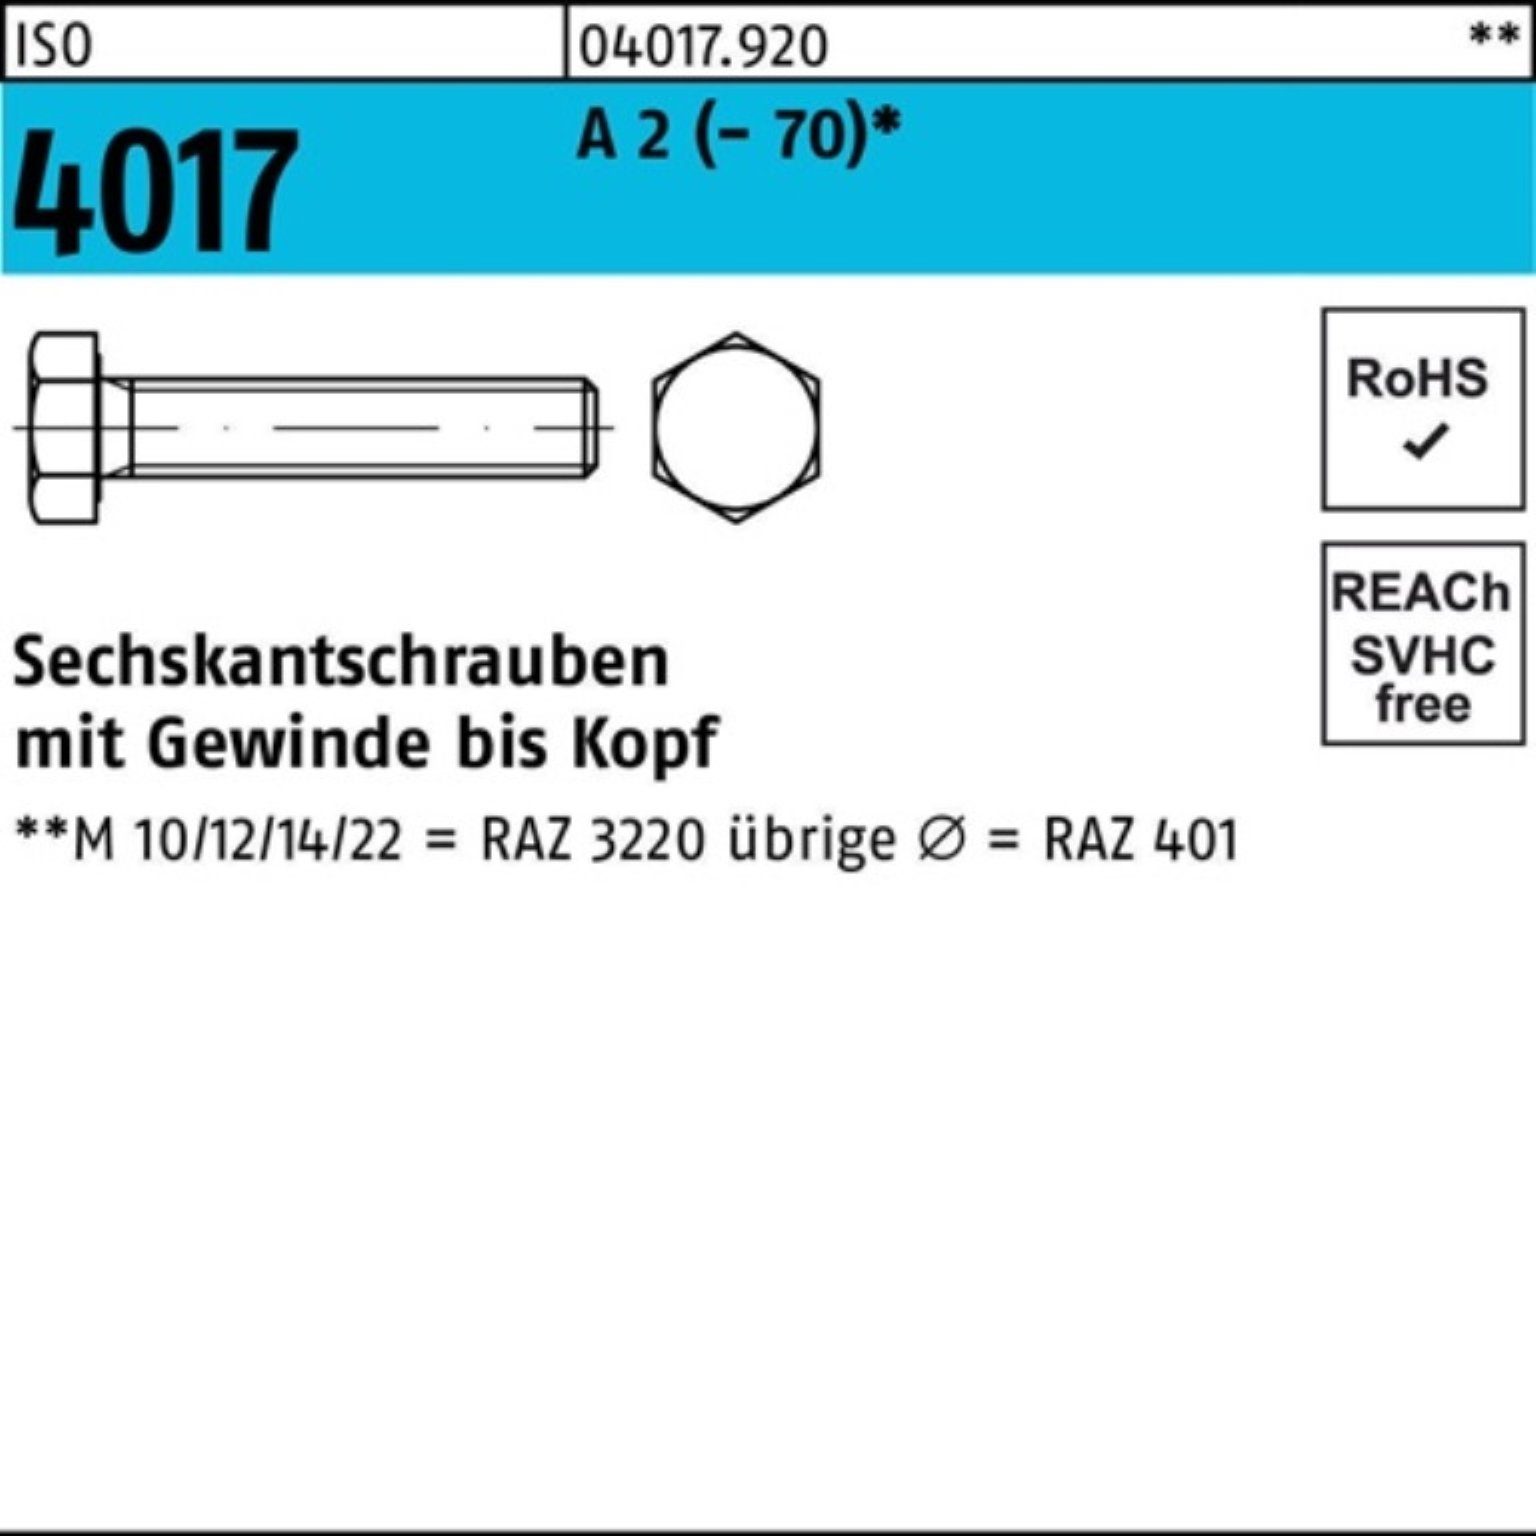 Bufab Sechskantschraube 100er Pack Sechskantschraube ISO 4017 VG M16x 65 A 2 (70) 25 Stück